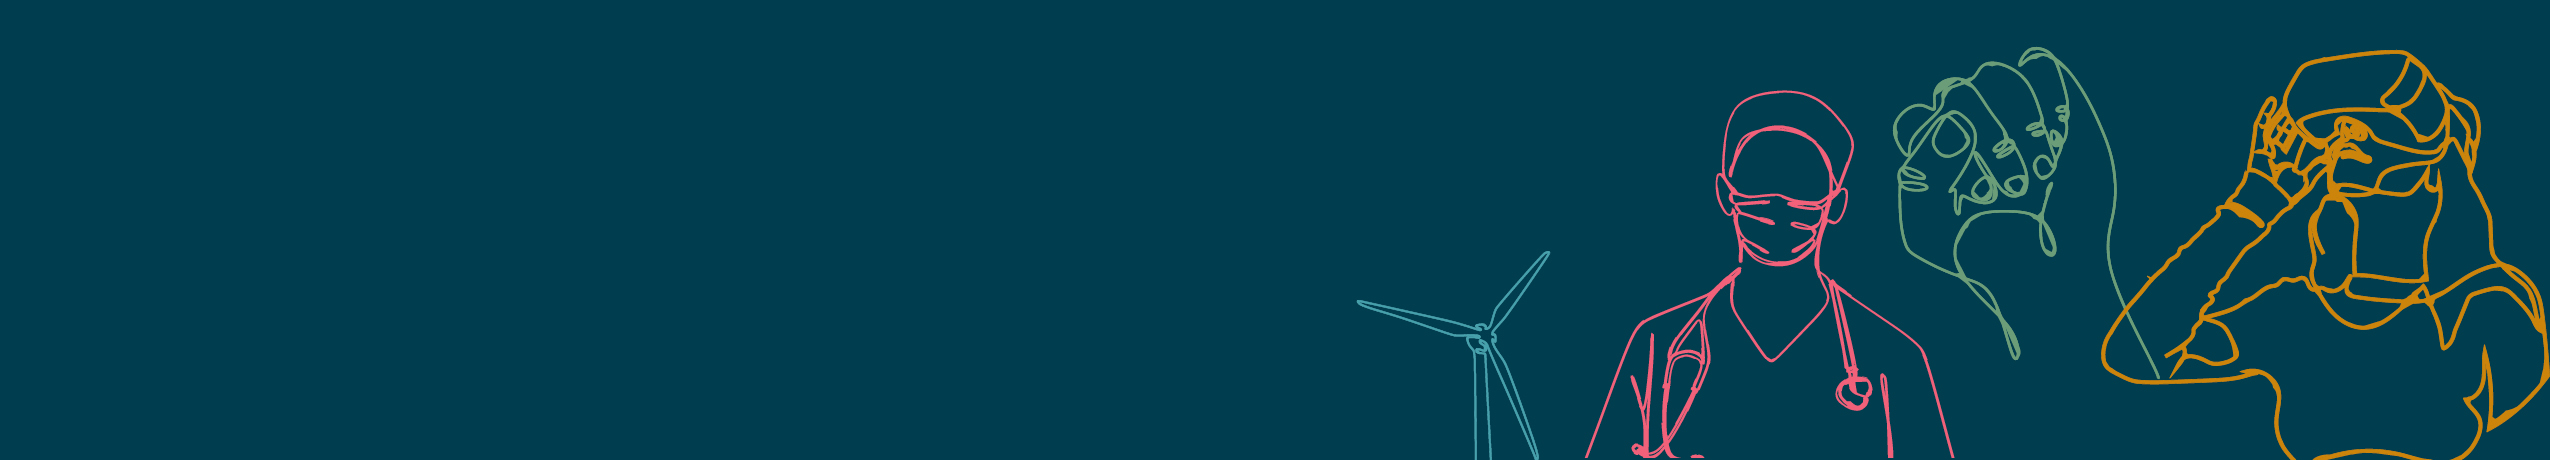 Imagem decorativa: desenho de linha mostrando um médico, um moinho de vento, um punho erguido em protesto e alguém interagindo com IA - onde tecnologia e sociedade interagem neste relatório